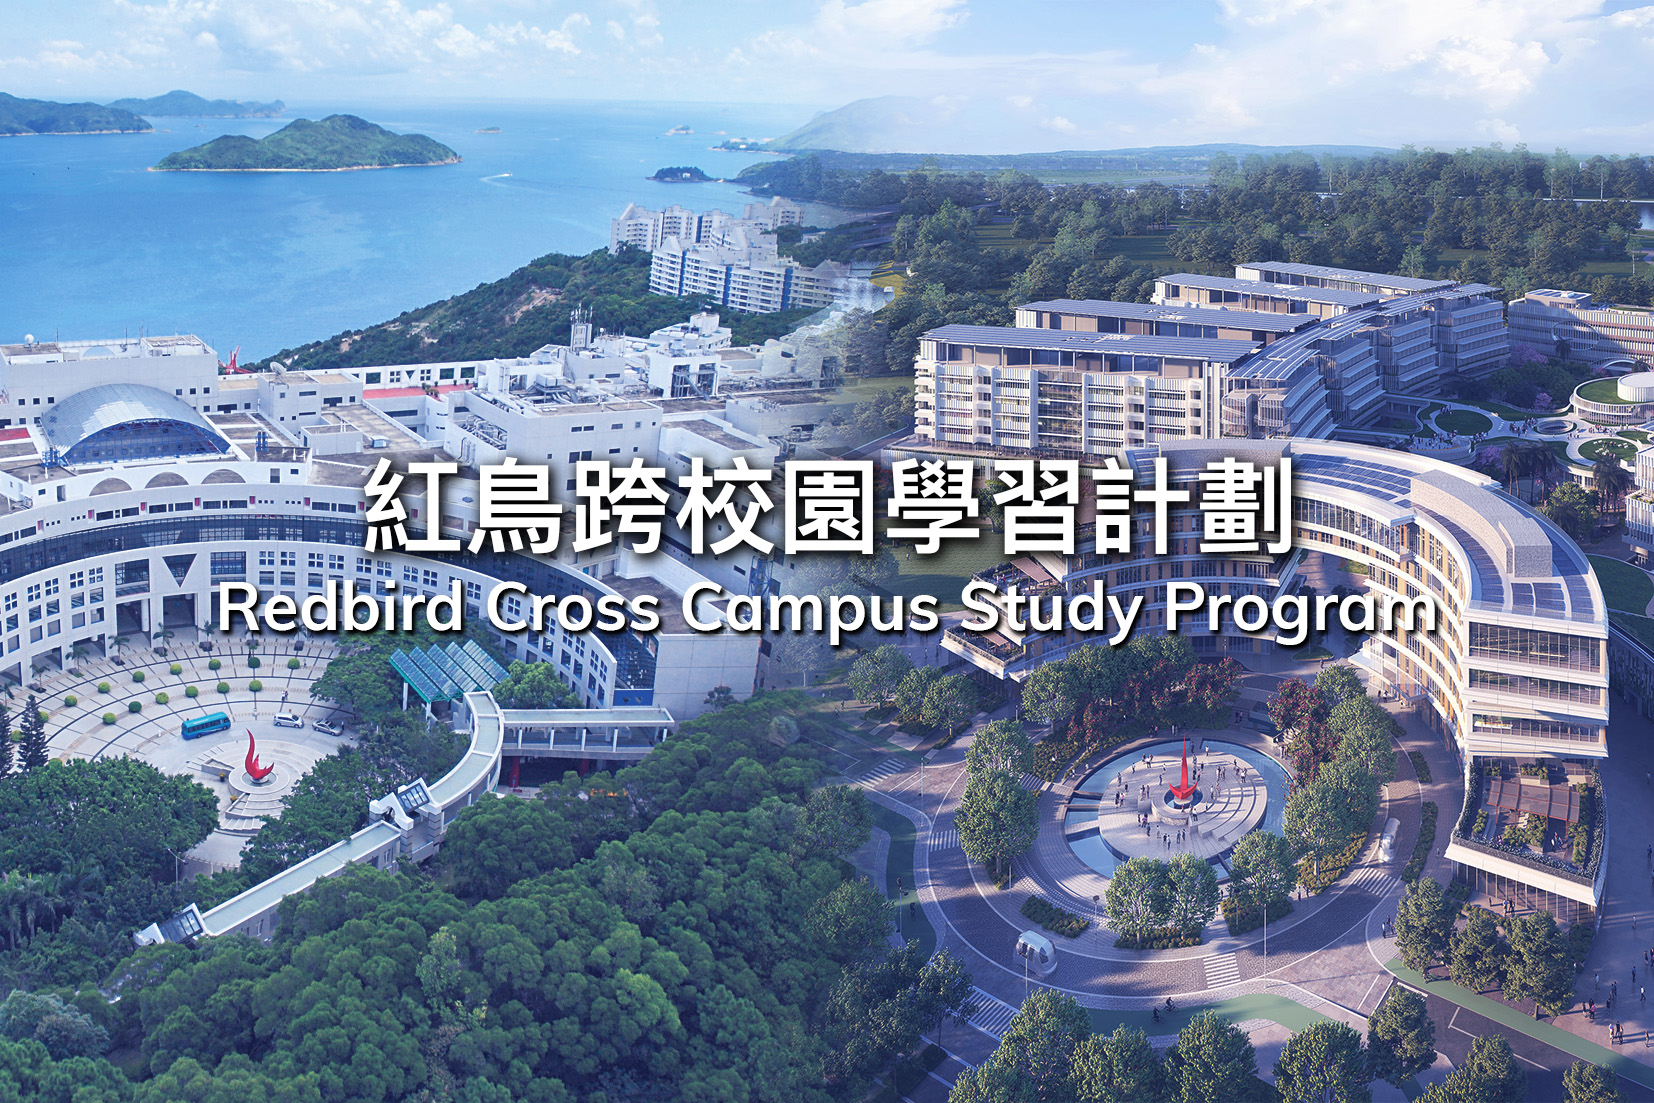 港科大与港科大（广州）共同推出「红鸟跨校园学习计划」，彰显科大的办学使命、价值观与对学术卓越的承诺，在两地校园传承发展。